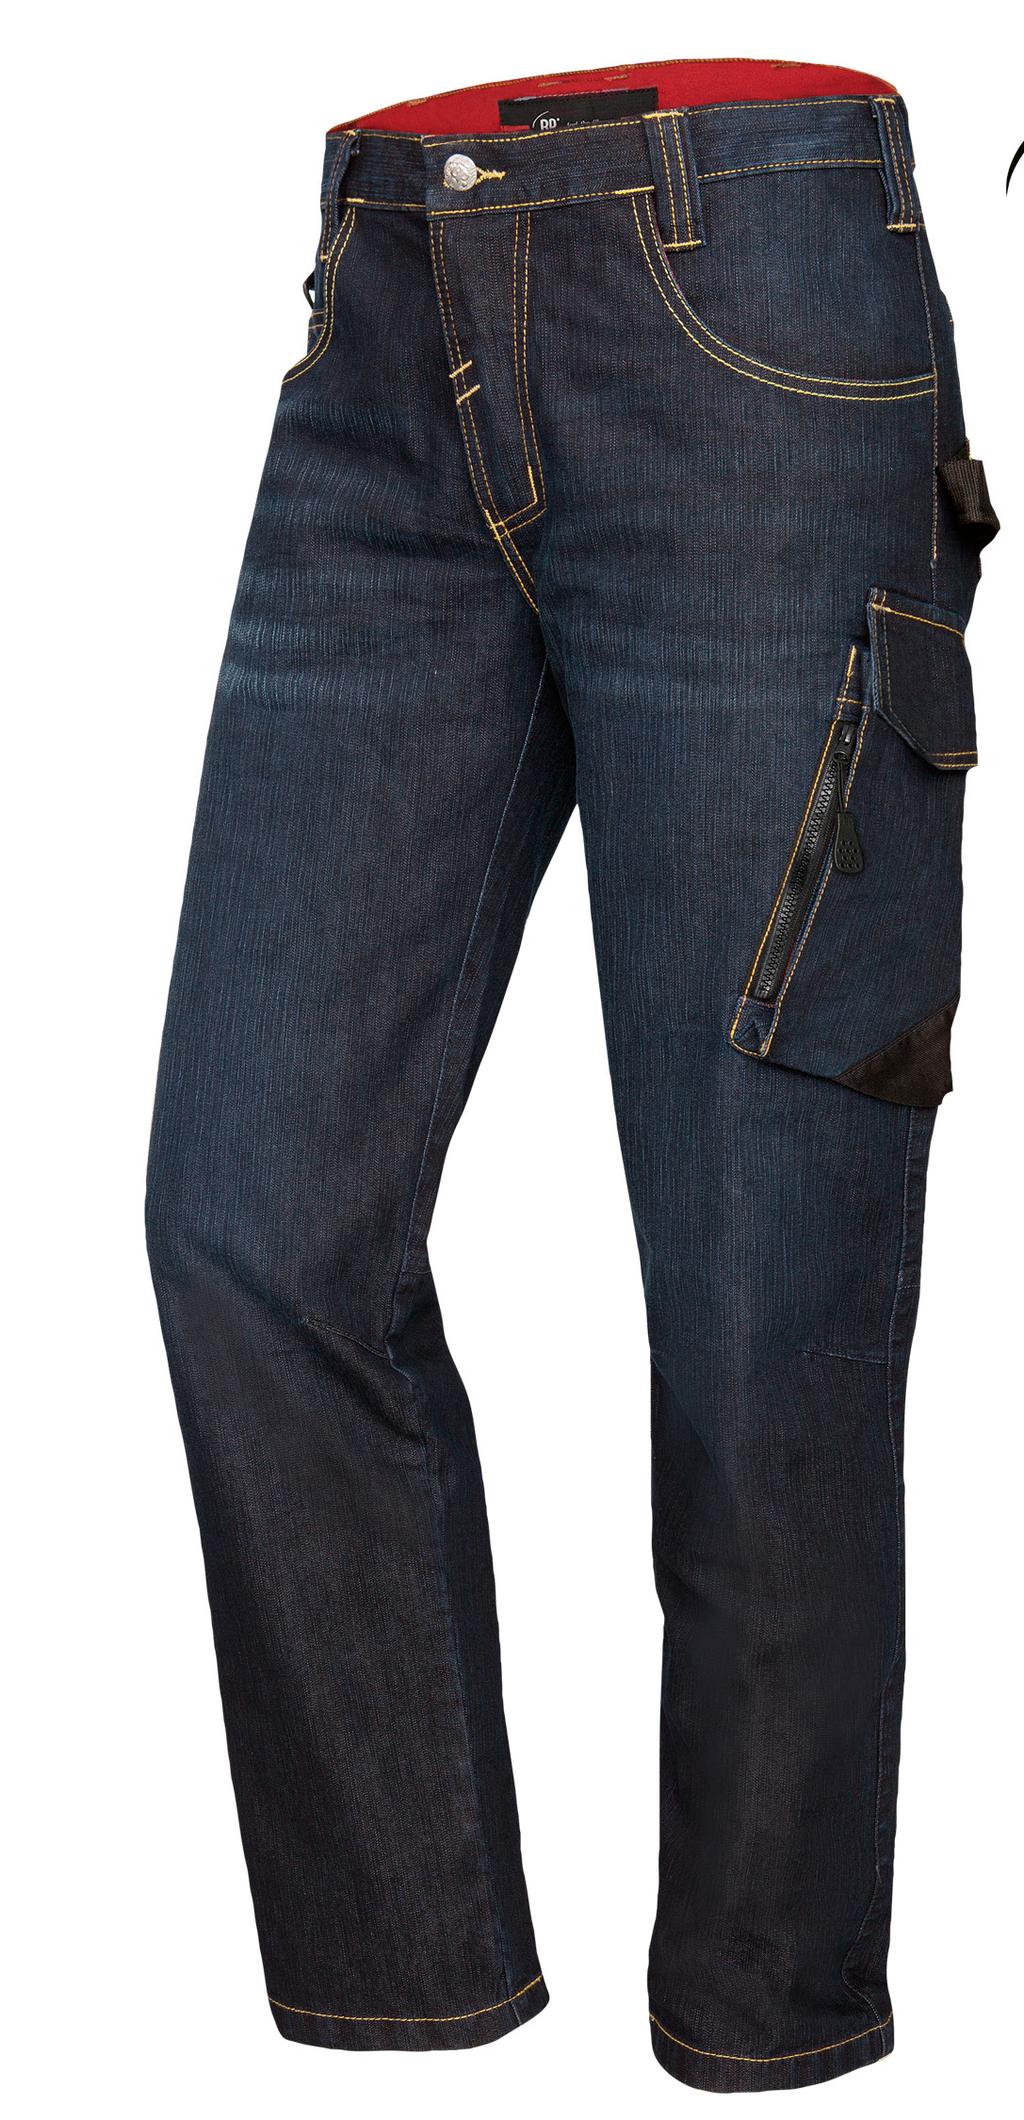 InMotion Kenmerken Jeans - 2 achterzakken. - 2 steekzakken vooraan.